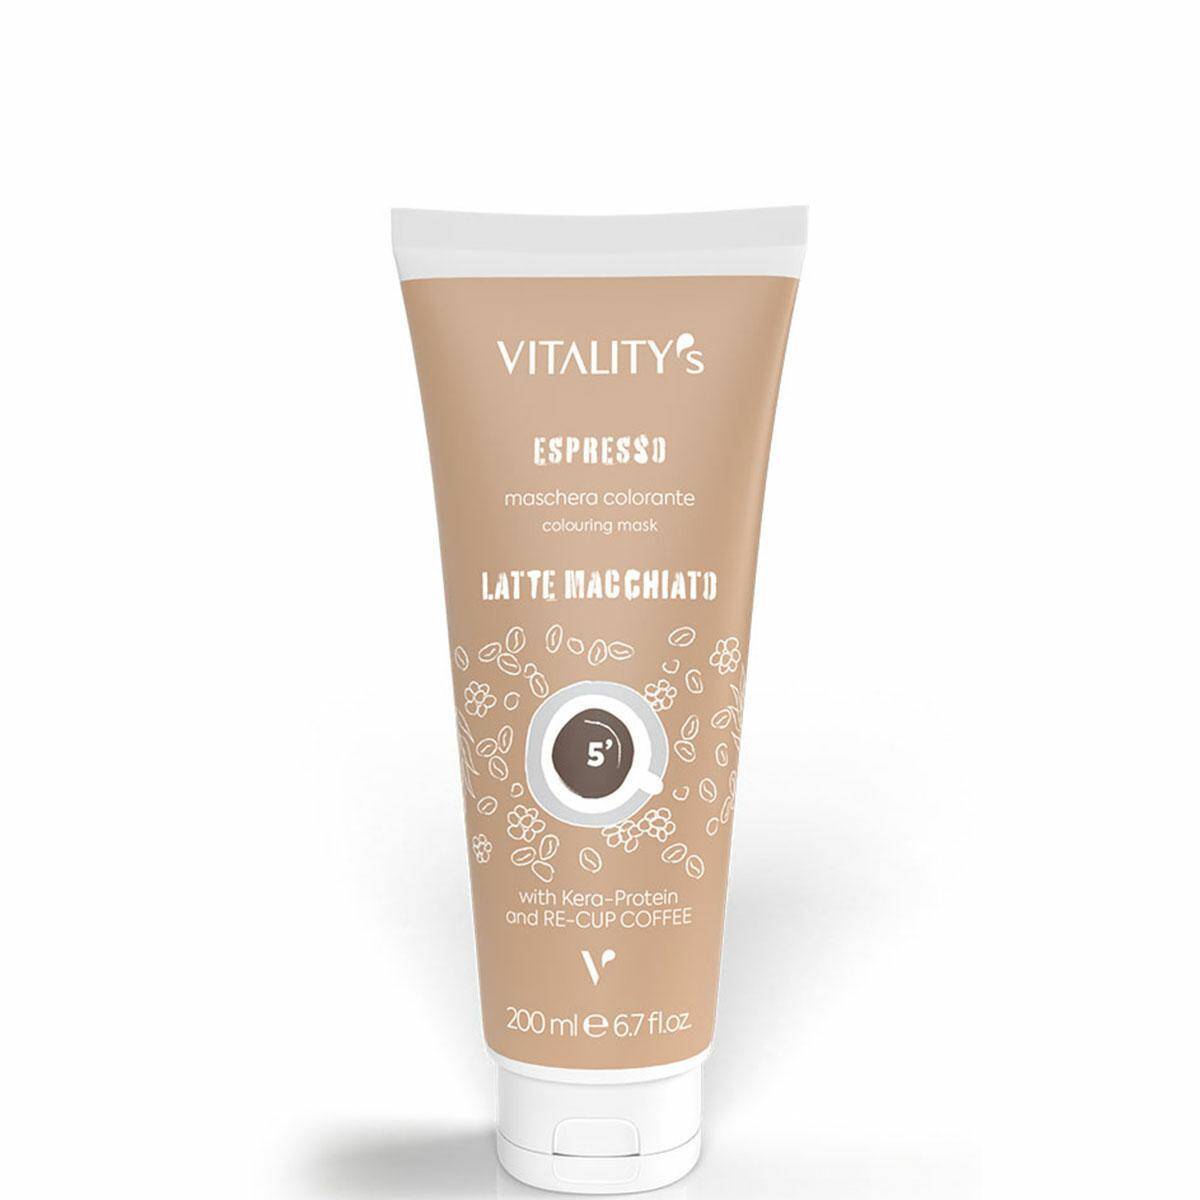 Vitalitys Espresso Latte Macchiato Maska koloryzująca Kawa z mlekiem 200ml New